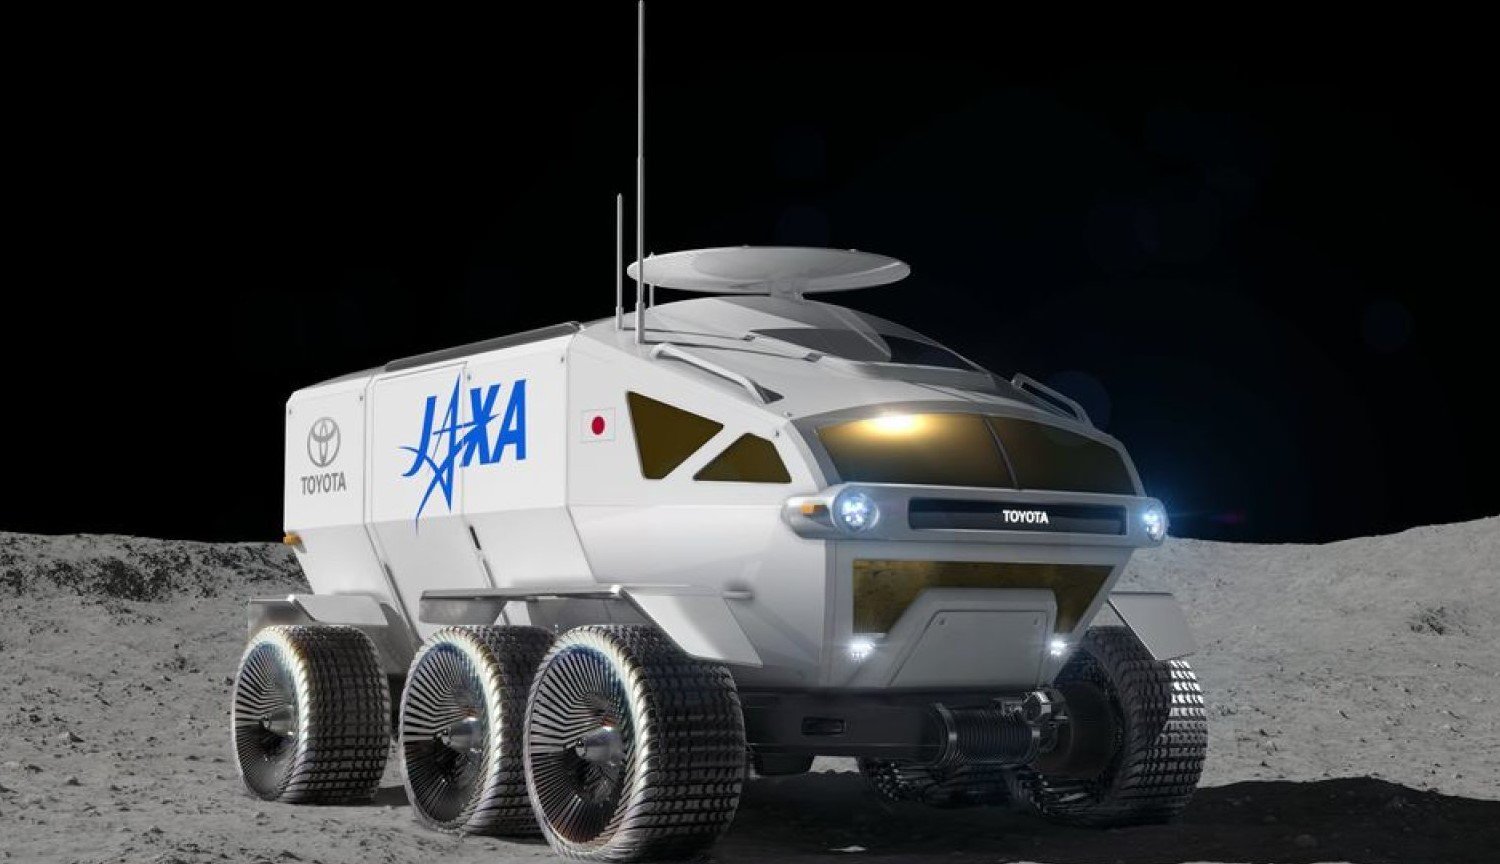 Toyota im Weltraum: der japanische Hersteller entwickelt Lunar Rover